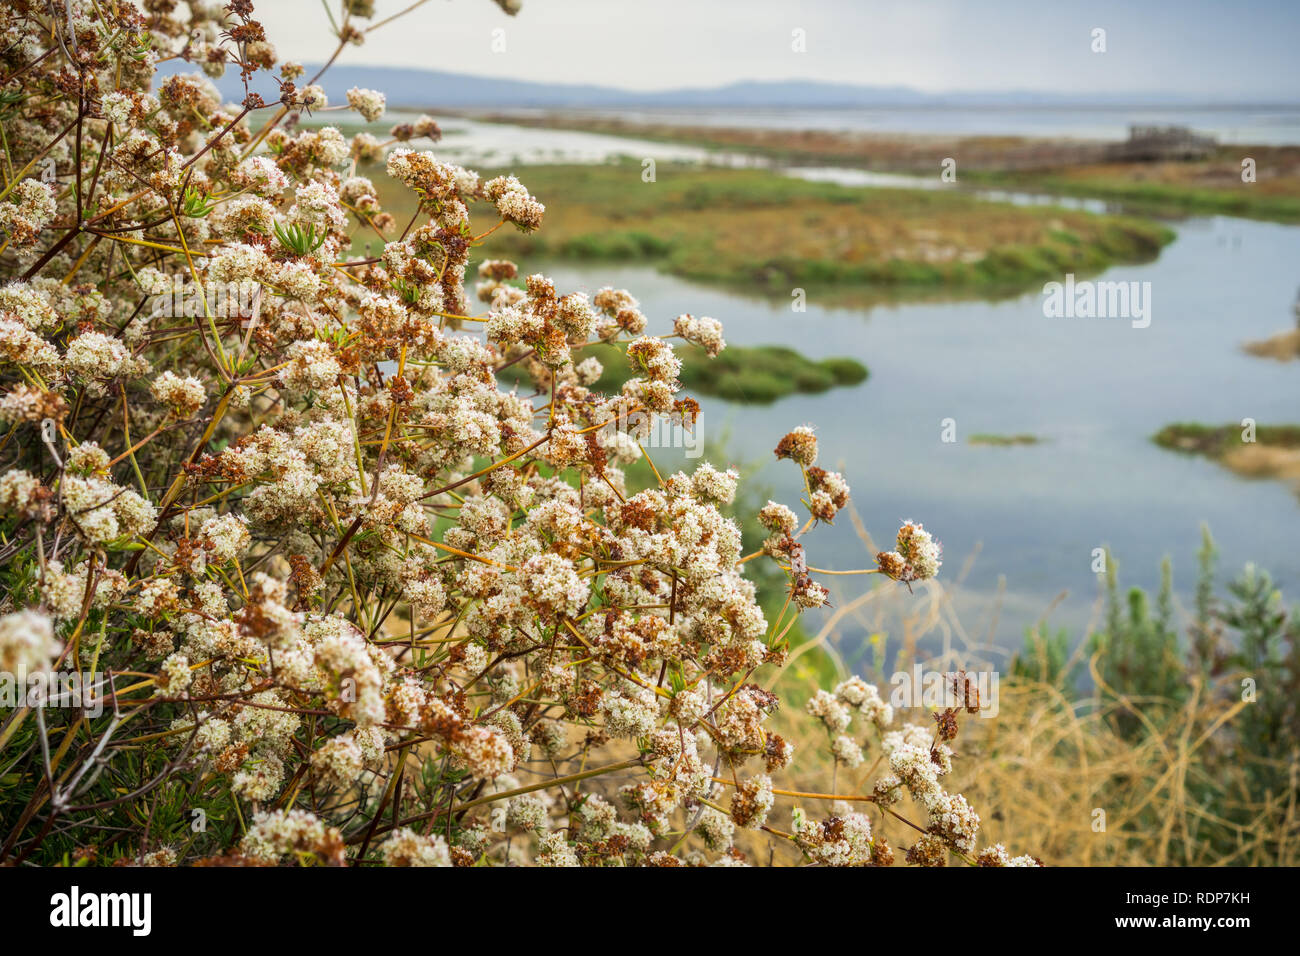 Californie Le sarrasin (Eriogonum fasciculatum) fleurs sauvages, Alviso marsh, Californie Banque D'Images